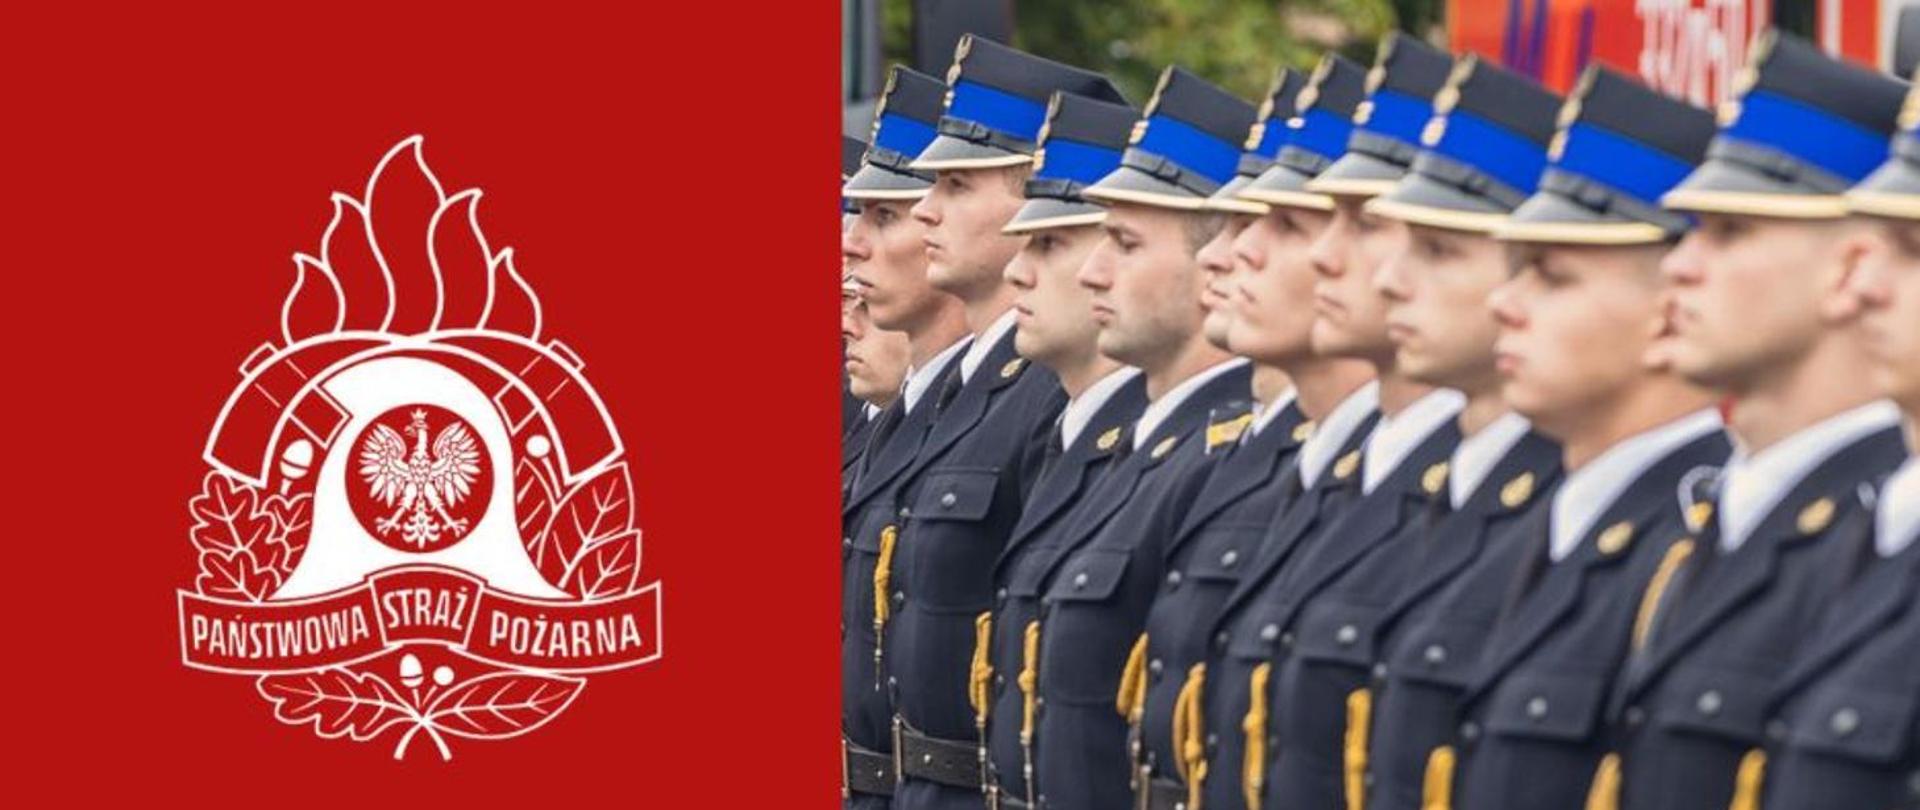 Infografika: po lewej stronie na czerwonym tle logo PSP, po prawo zdjęcie strażaków stojących na baczność w mundurach galowych